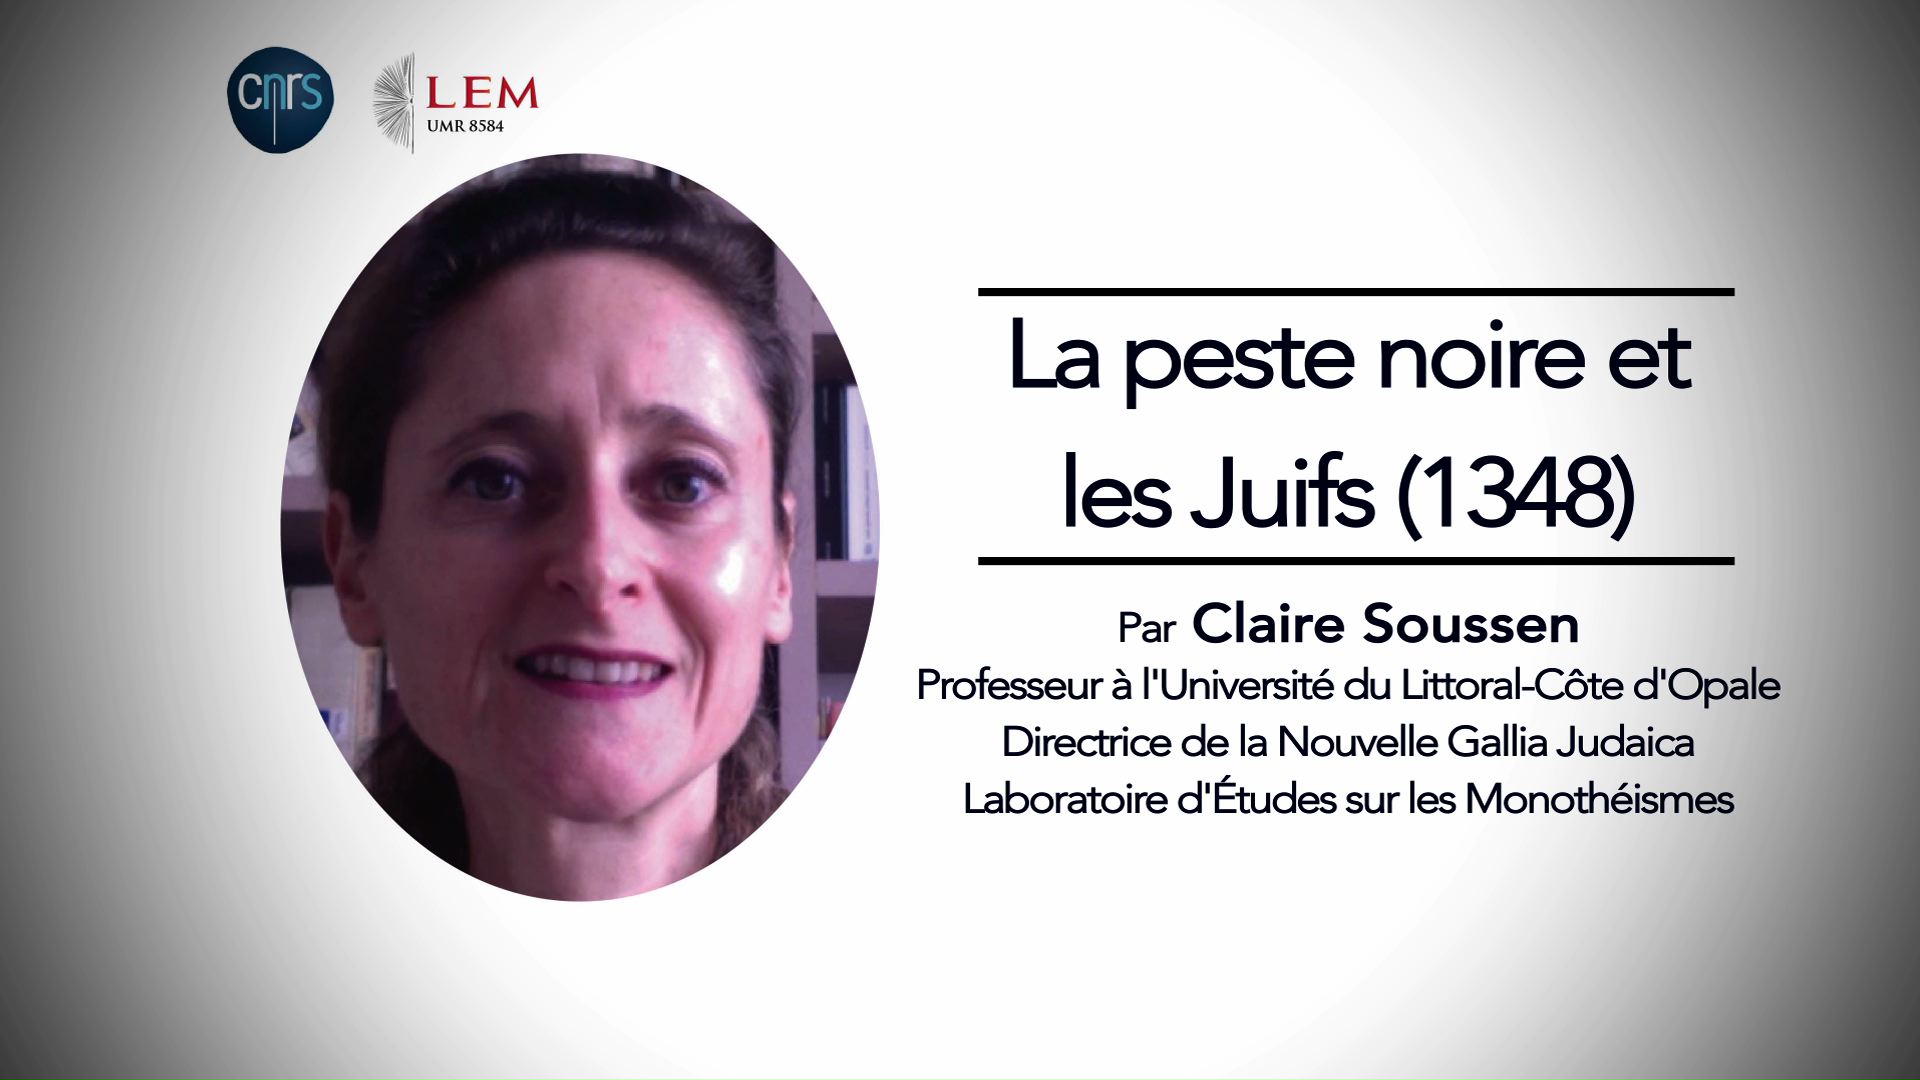 Claire Soussen : "La peste noire et les Juifs (1348)"